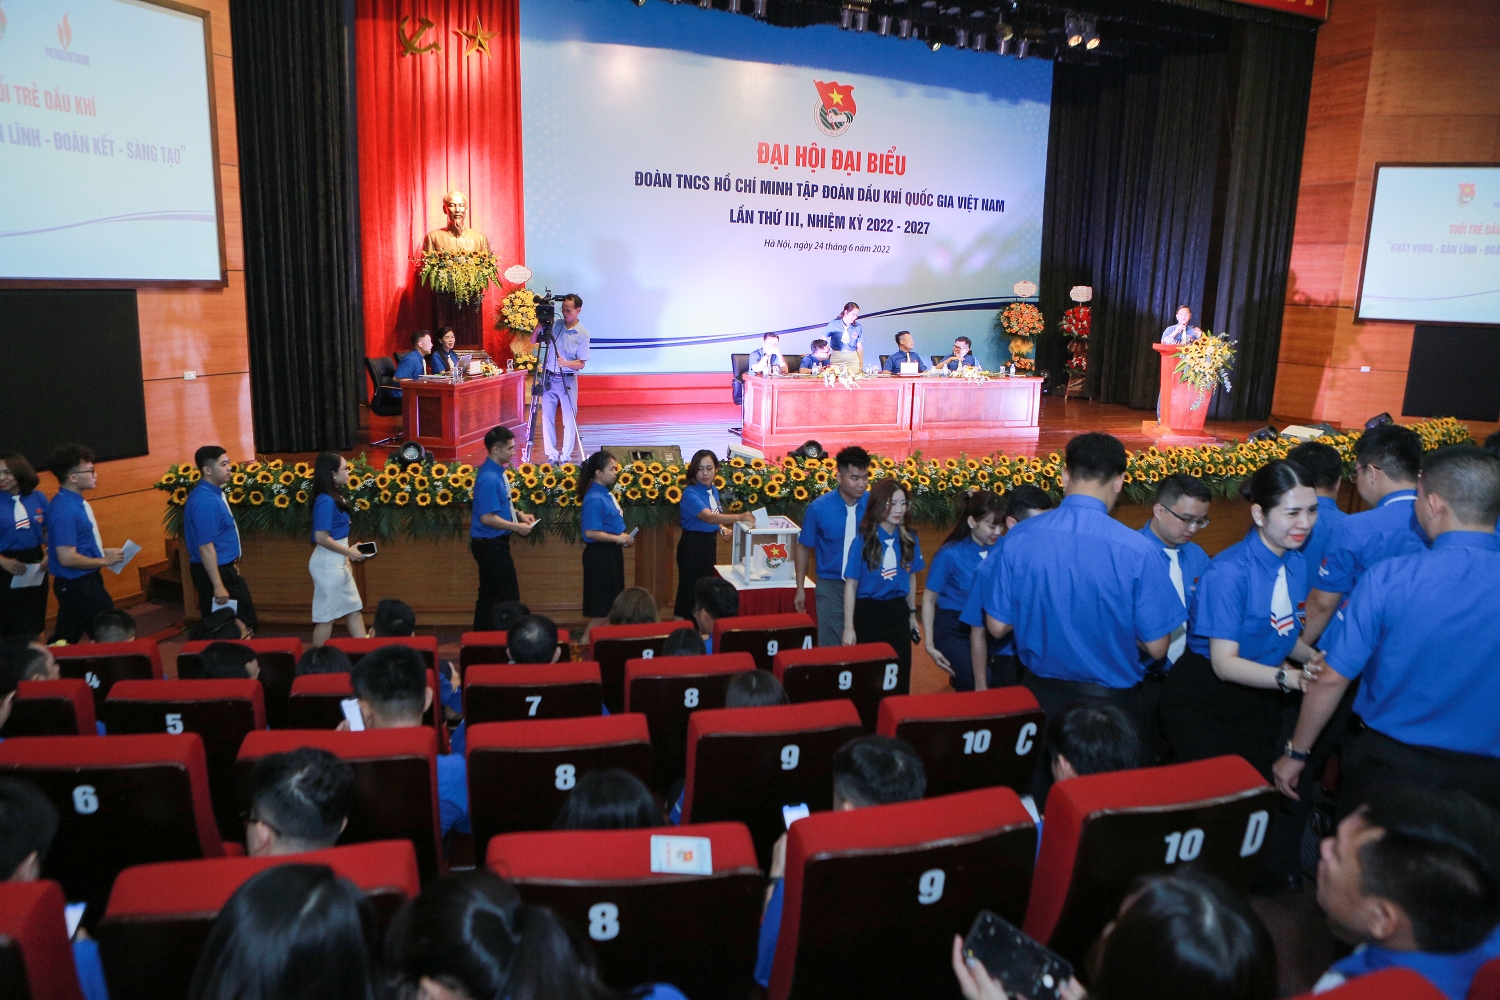 Khai mạc phiên thứ nhất Đại hội đại biểu Đoàn Thanh niên Tập đoàn lần thứ III, nhiệm kỳ 2022 2027